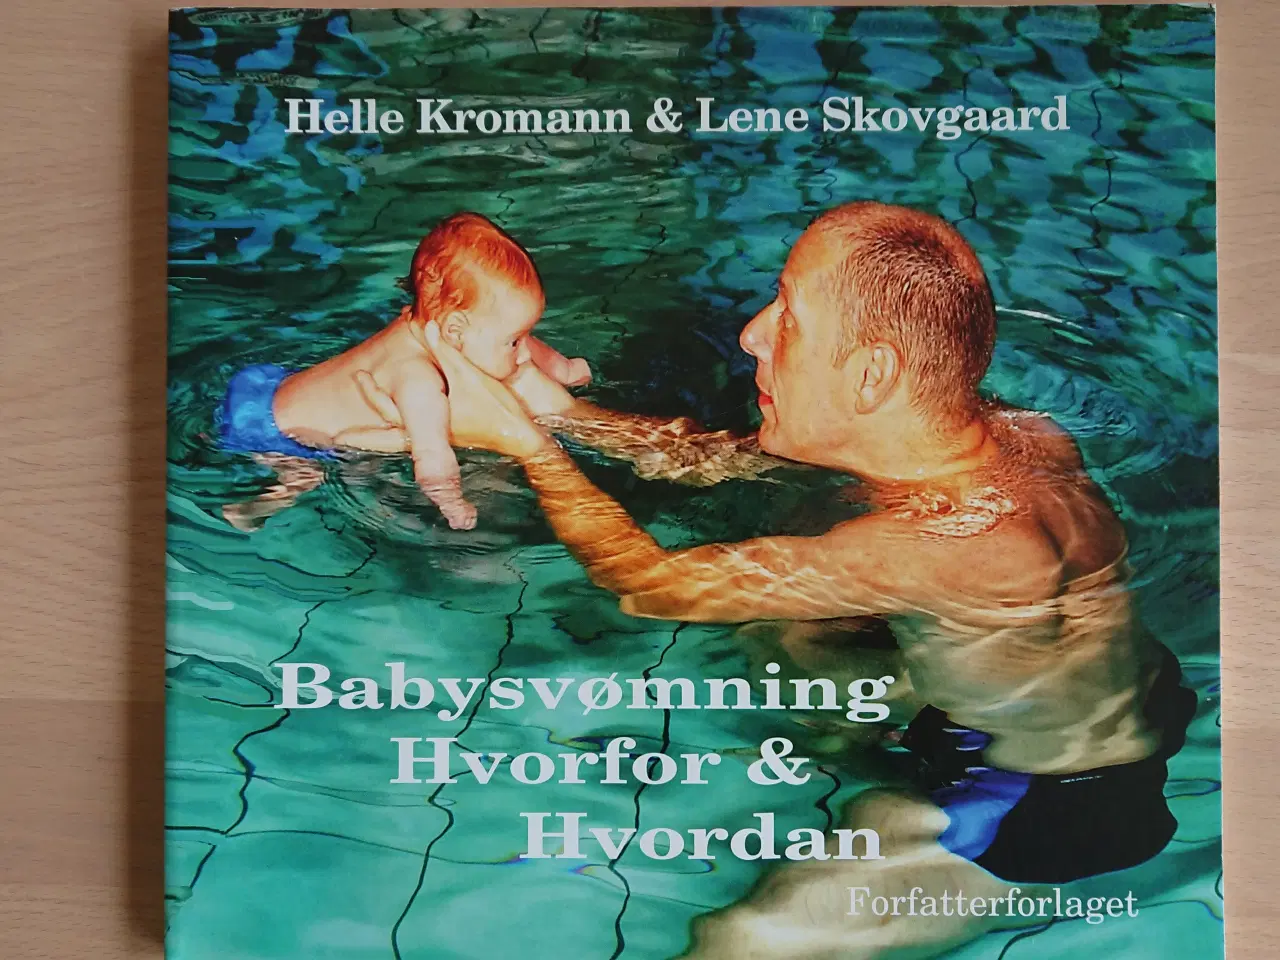 Billede 1 - Bog "Babysvømning" 